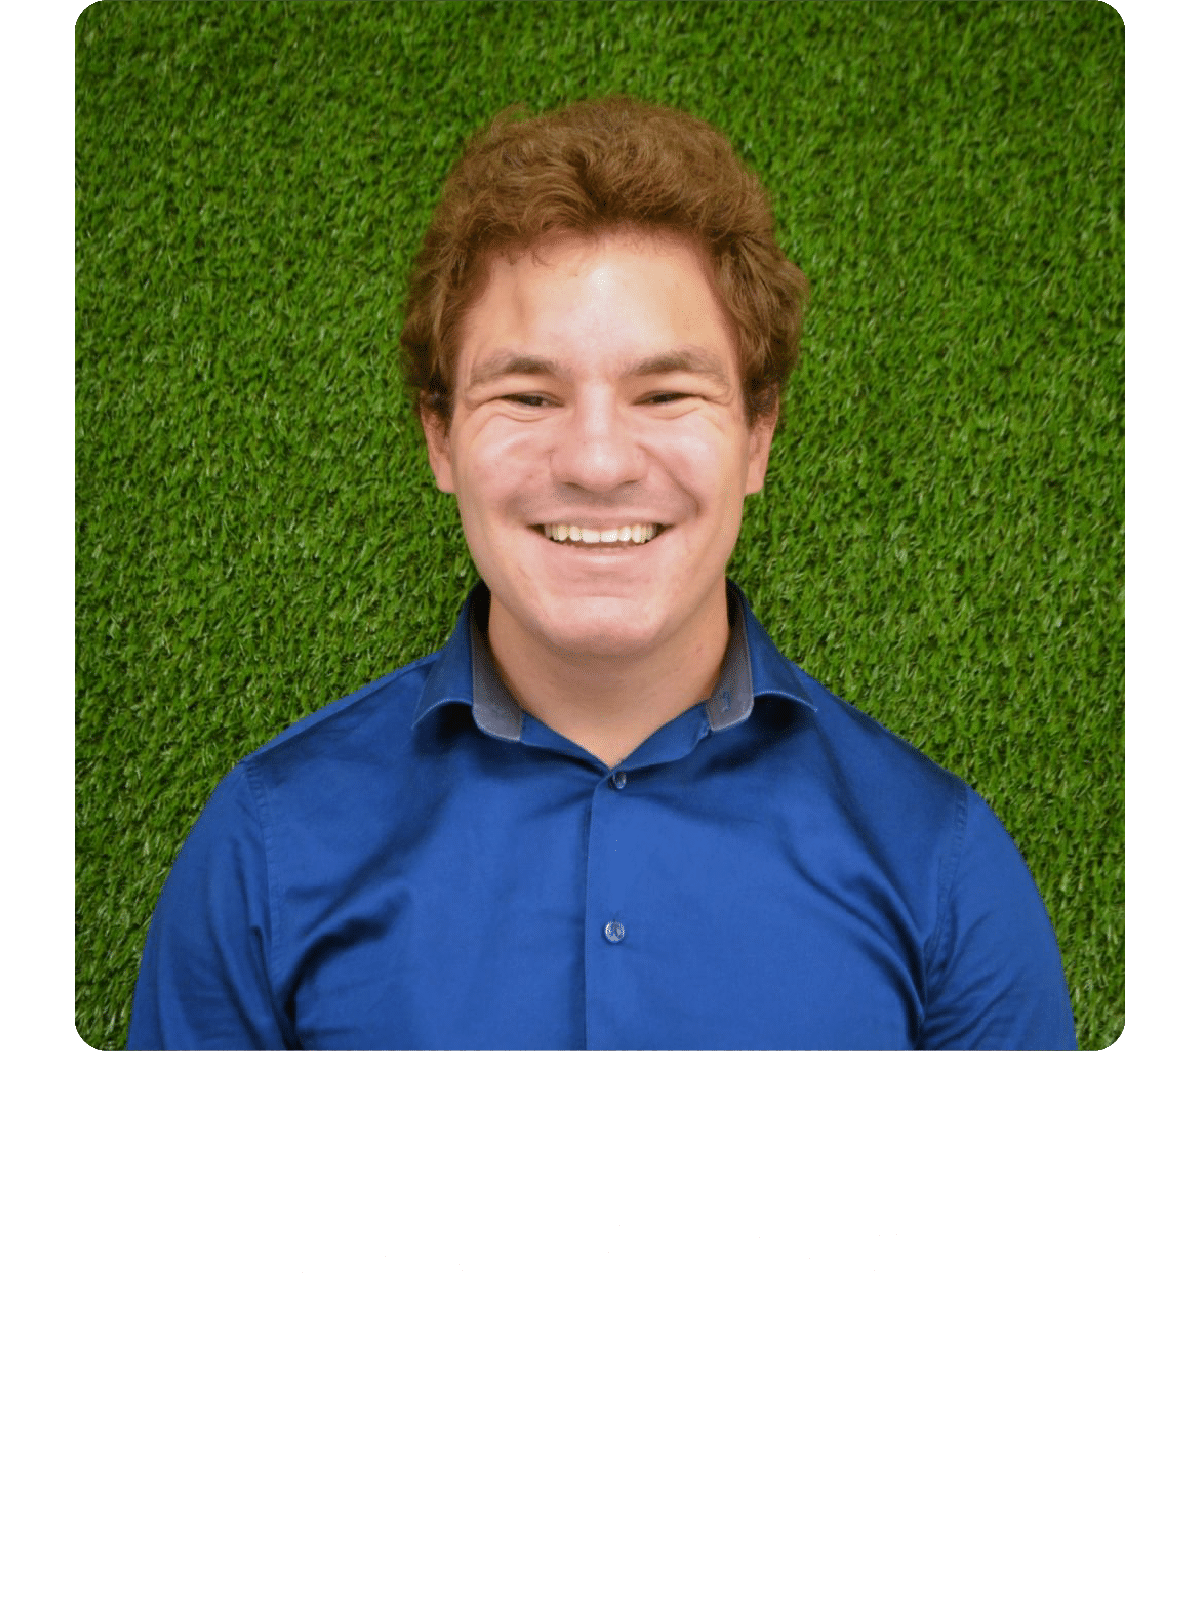 Stefan Krstović